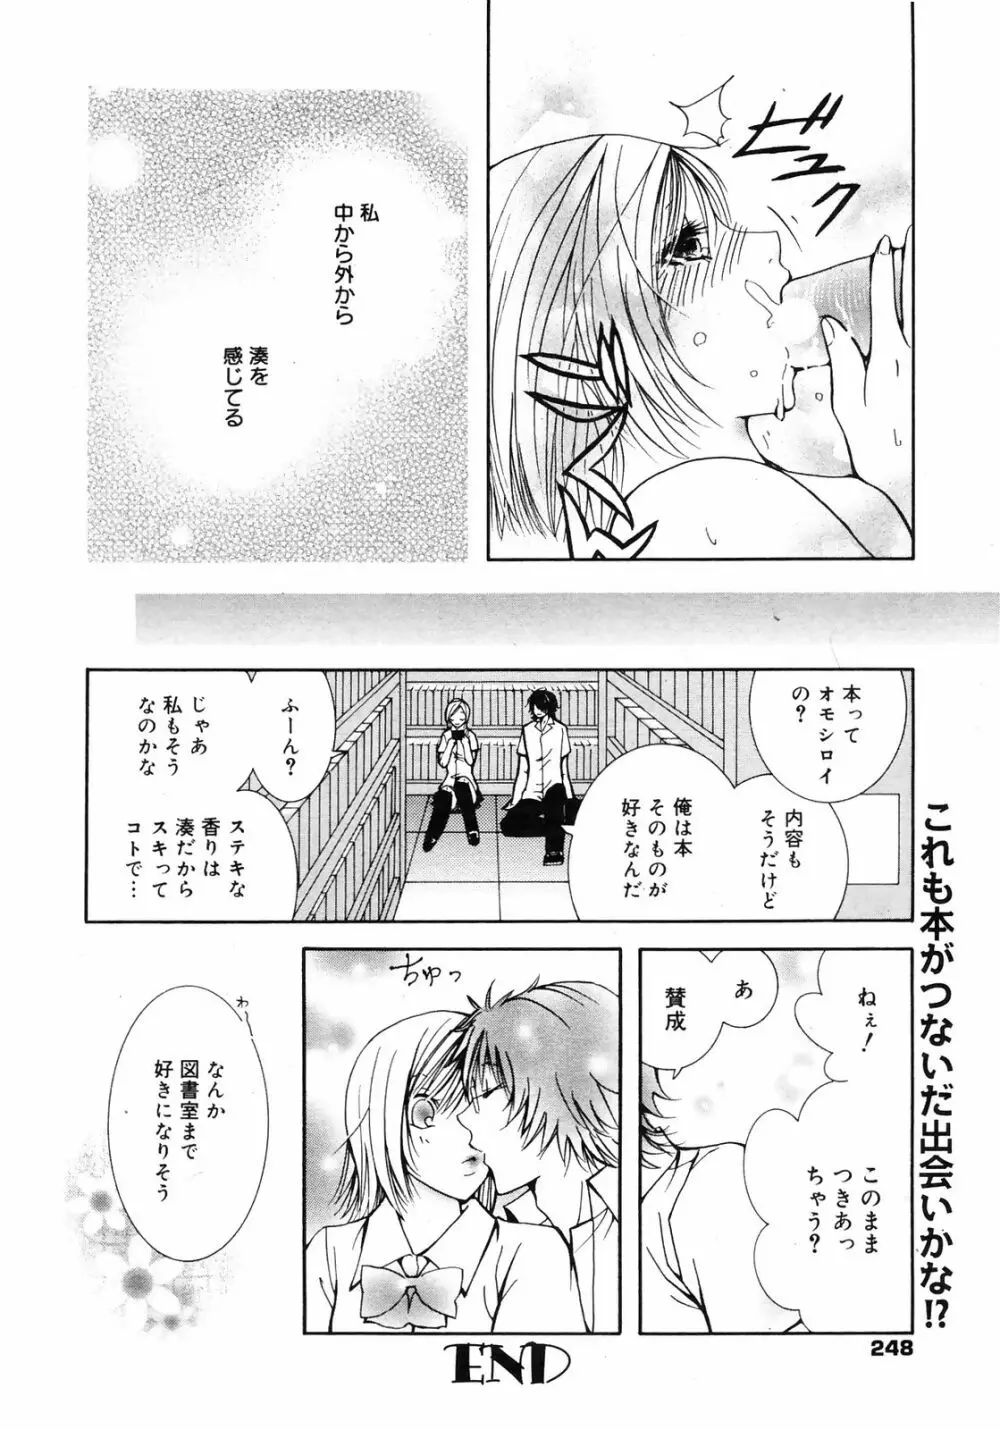 Manga Bangaichi 2009-01 248ページ